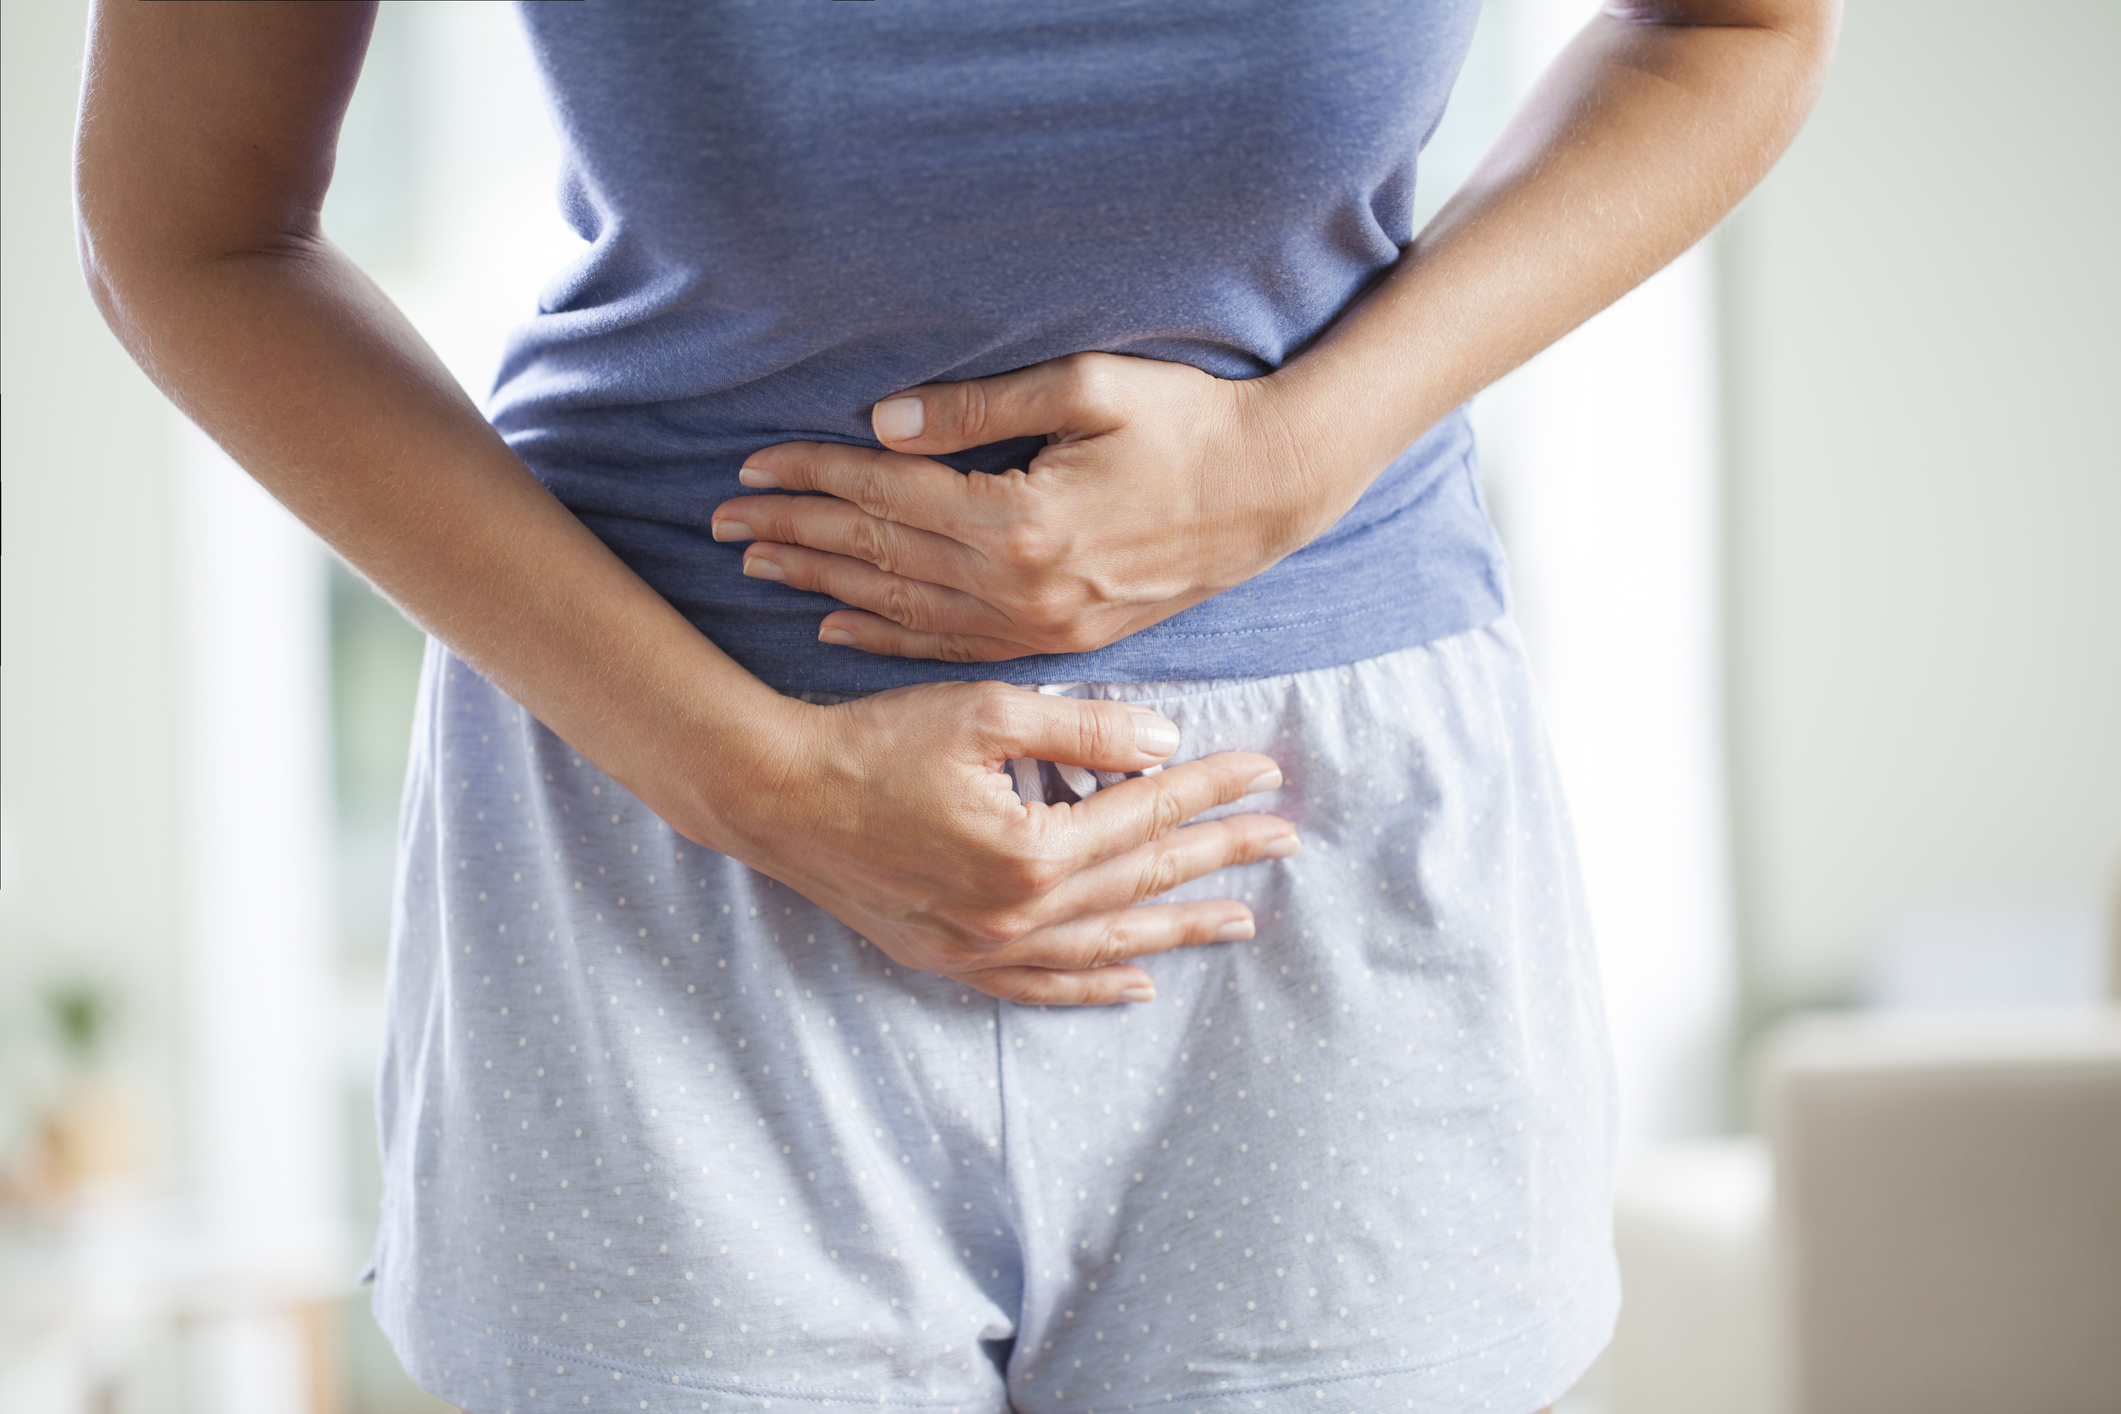 Menstruação: entenda o ciclo e veja dicas para aliviar cólicas e TPM